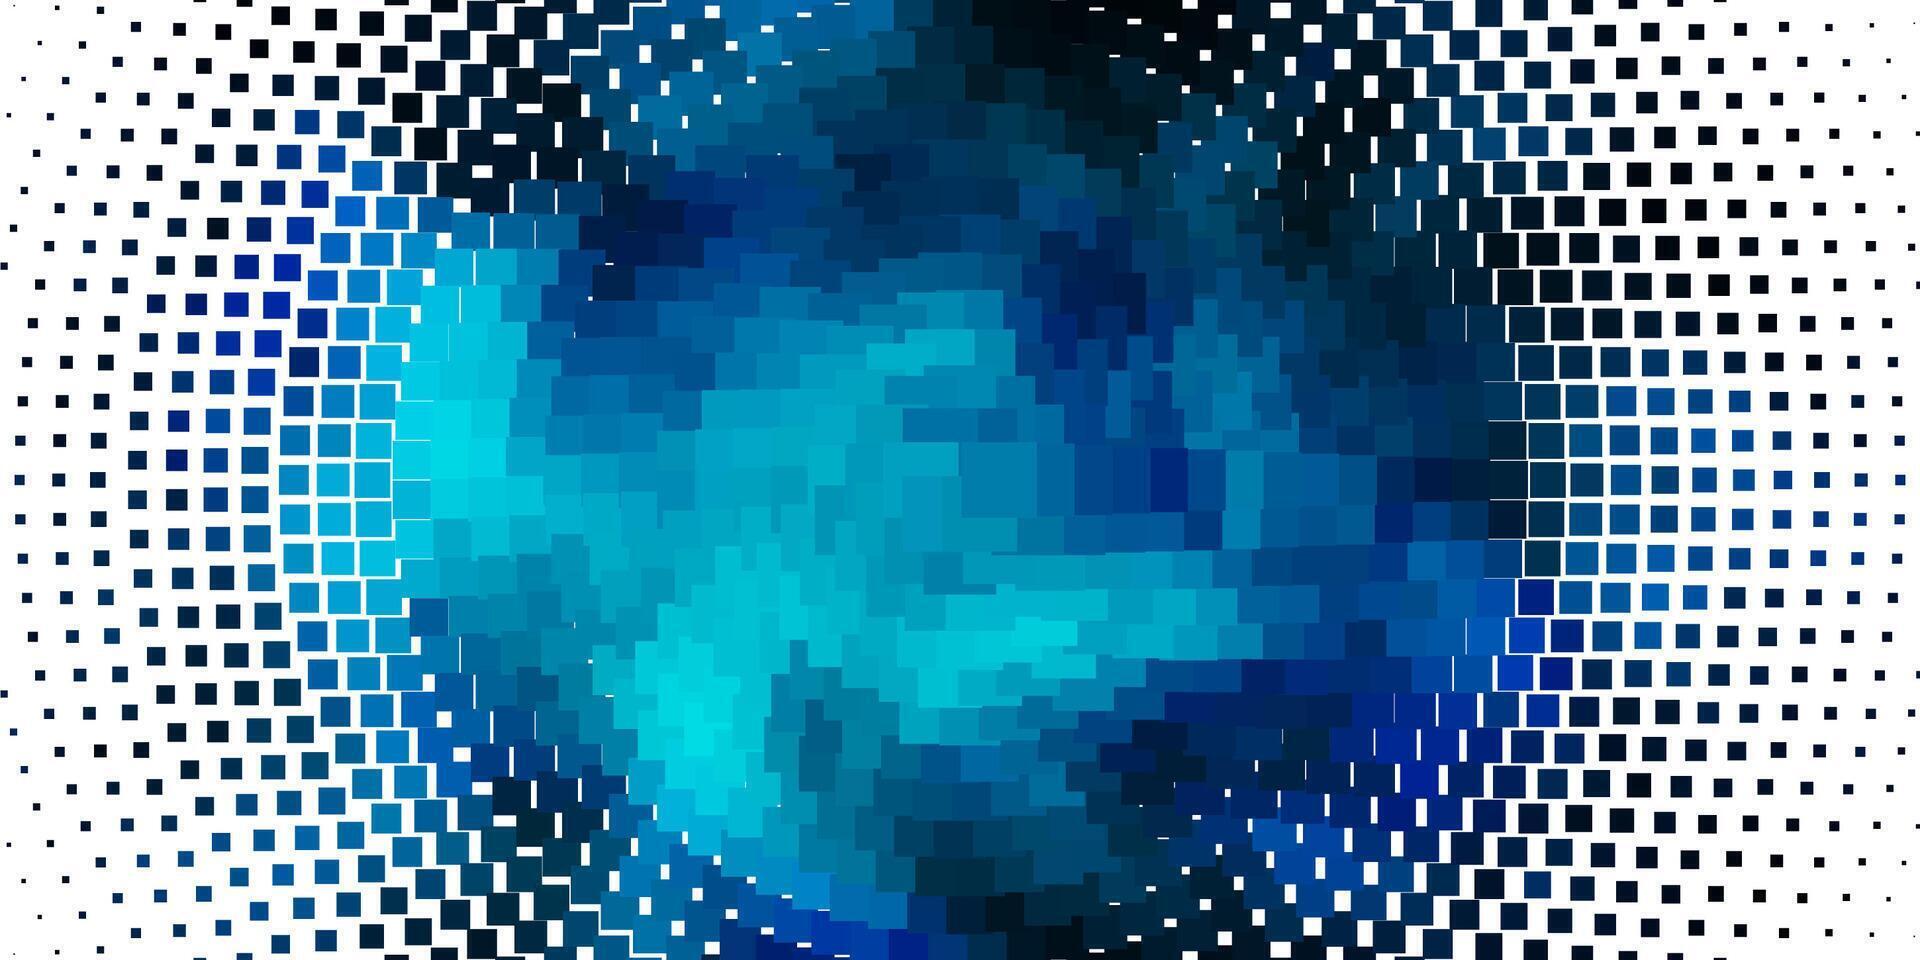 ljusblå vektor bakgrund med rektanglar.